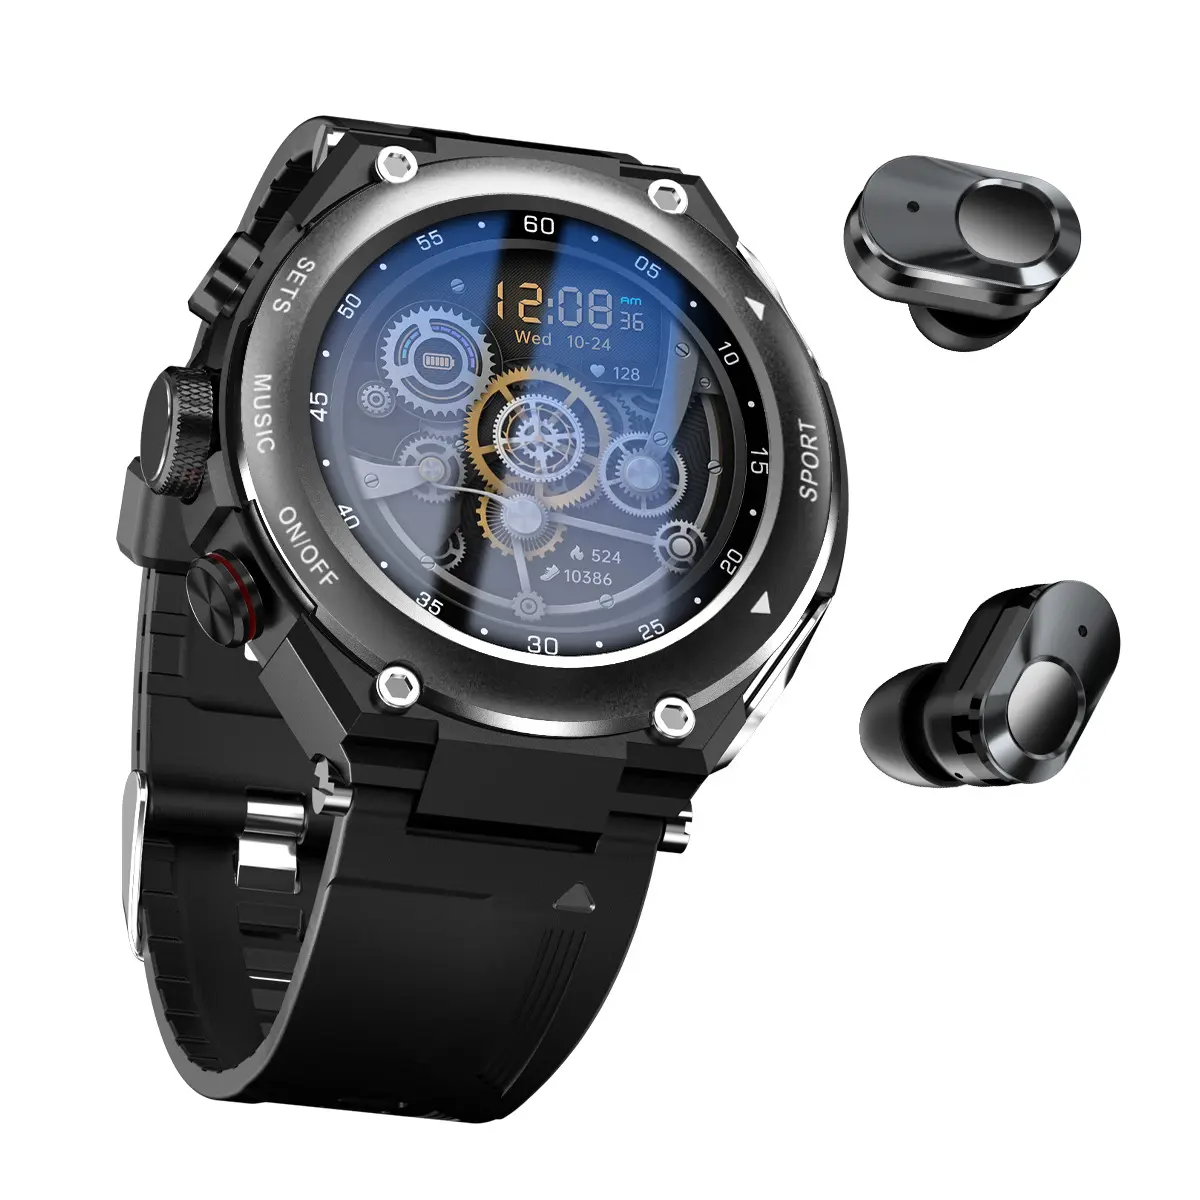 Met Verborgen Oordopjes Groot Full Touch Screen Mannen Fitness Sport 2 In 1 Zwarte Tws Draadloze Bluetooth Smart Watch